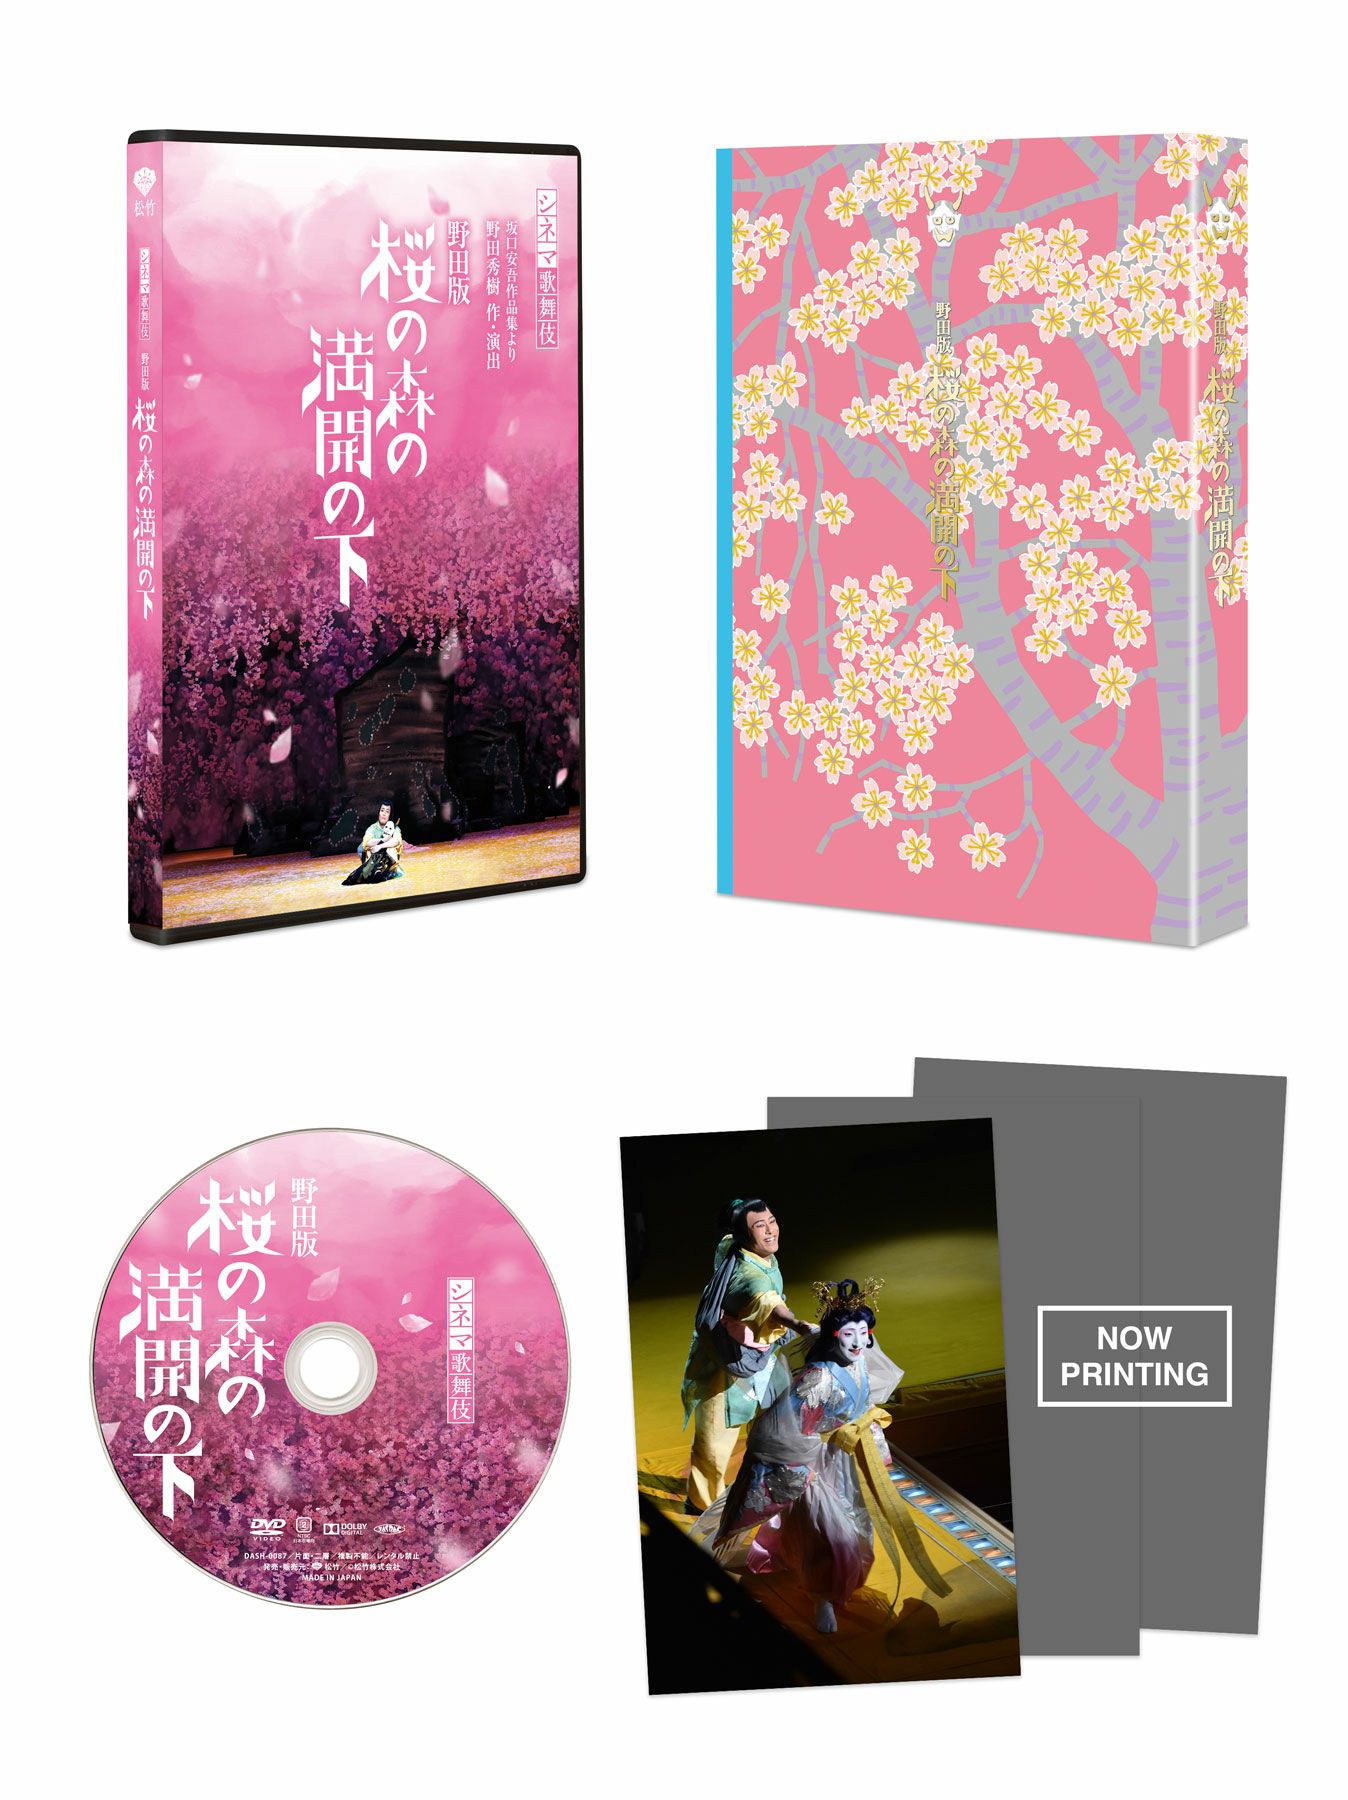 シネマ歌舞伎『野田版 桜の森の満開の下』 [DVD] | 松竹DVD倶楽部